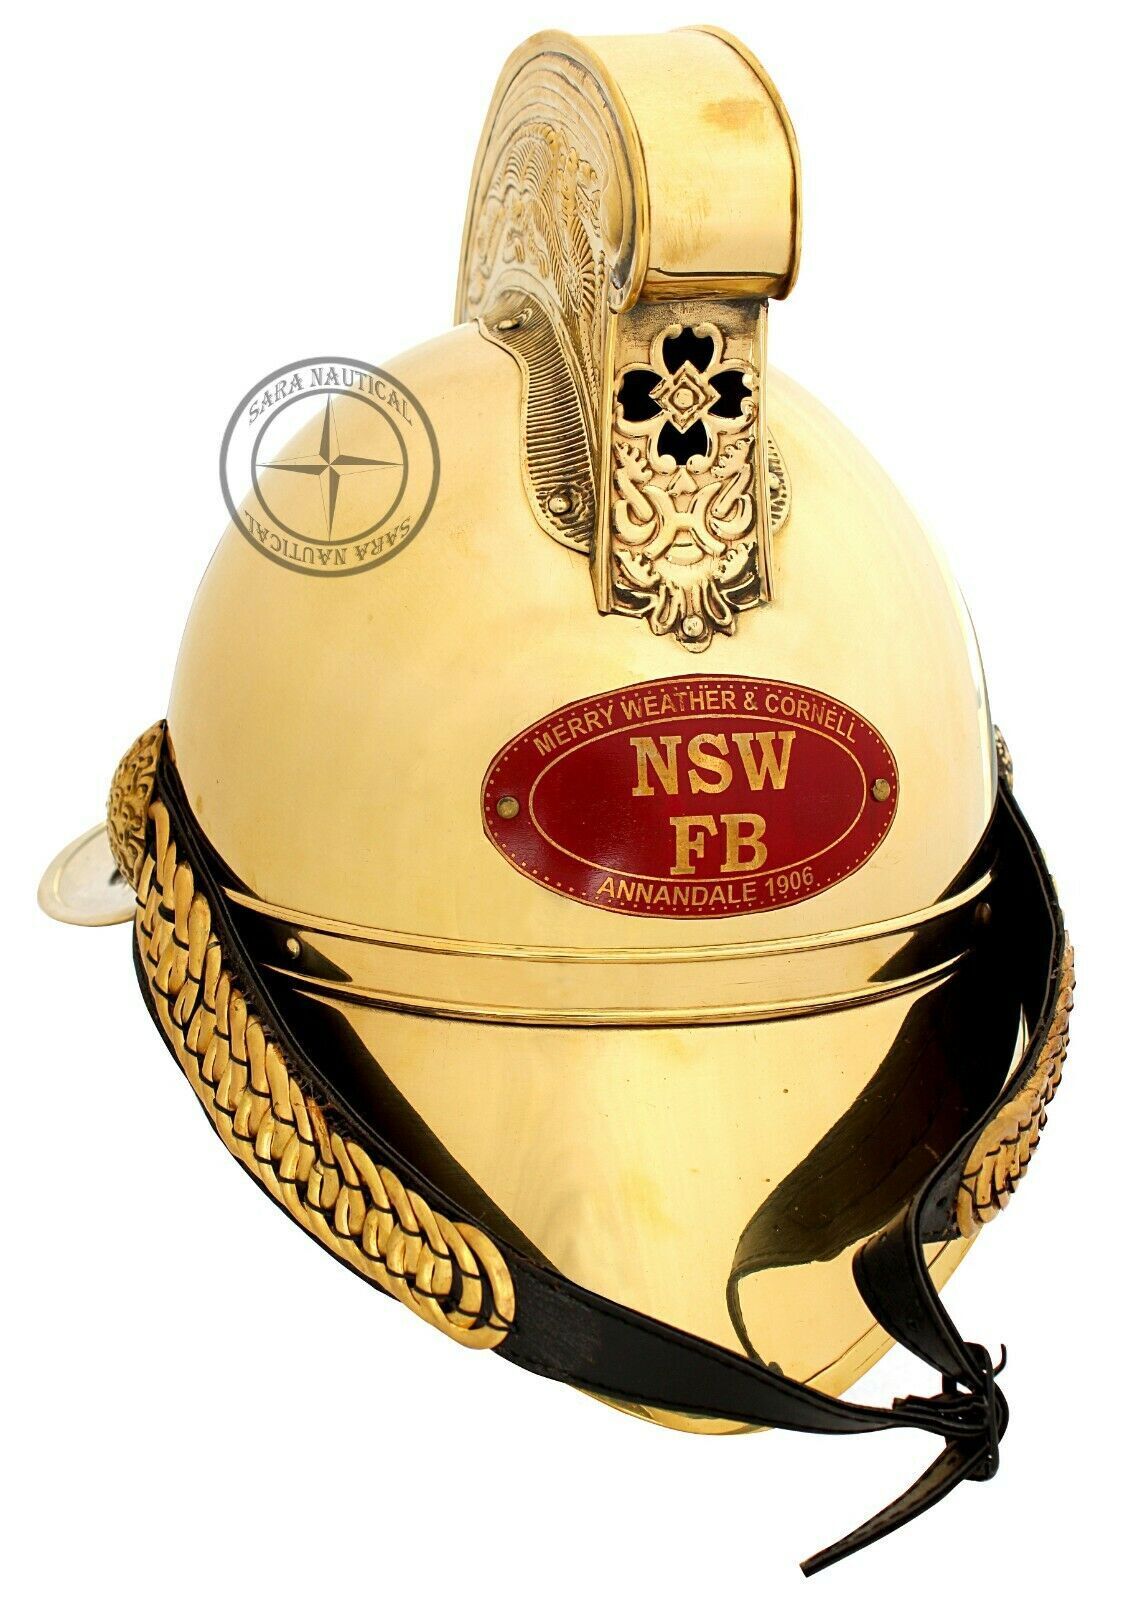 Brass Fireman Helmet Merry Weather NSW FB Helmet Victorian Fighter Helmet